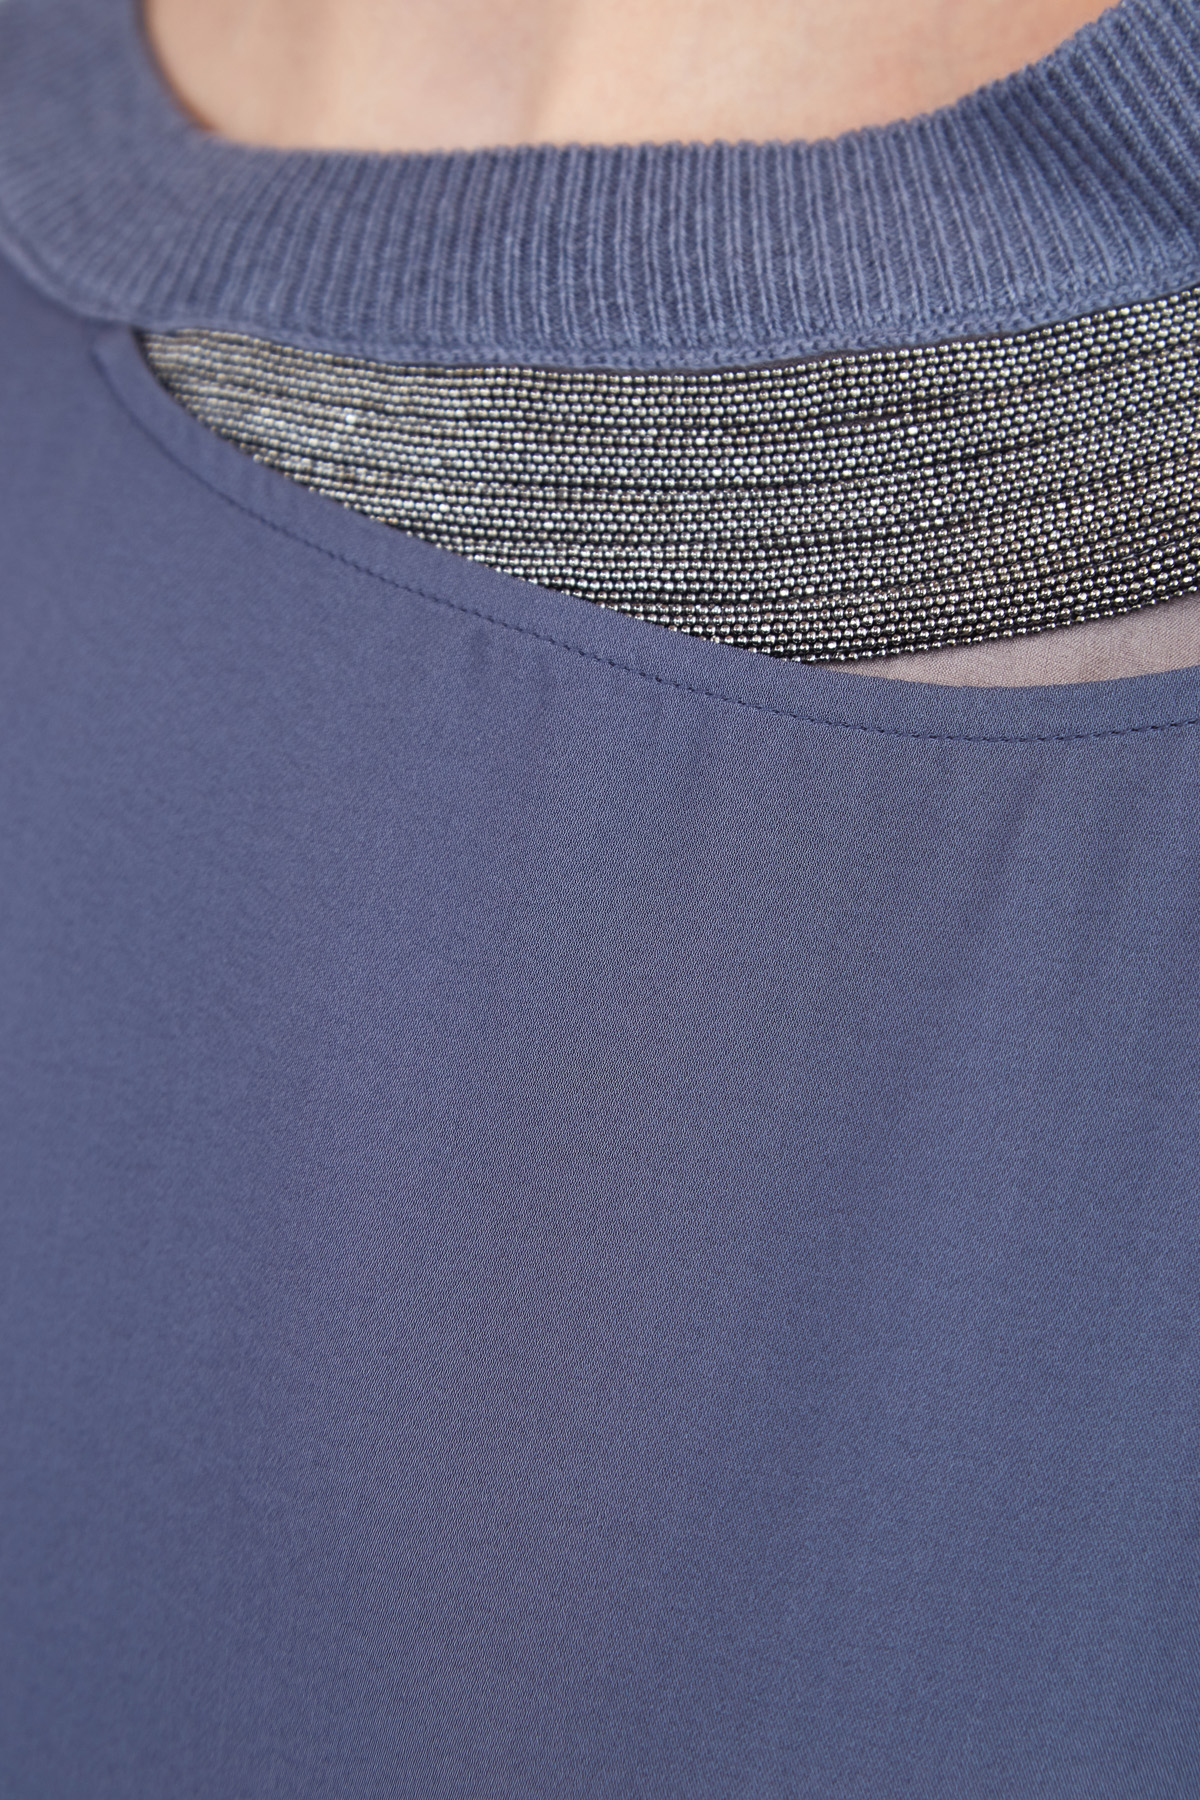 Шелковая блузка с трикотажным воротом, разрезом и цепочками бусин FABIANA FILIPPI, цвет синий, размер 44 - фото 5